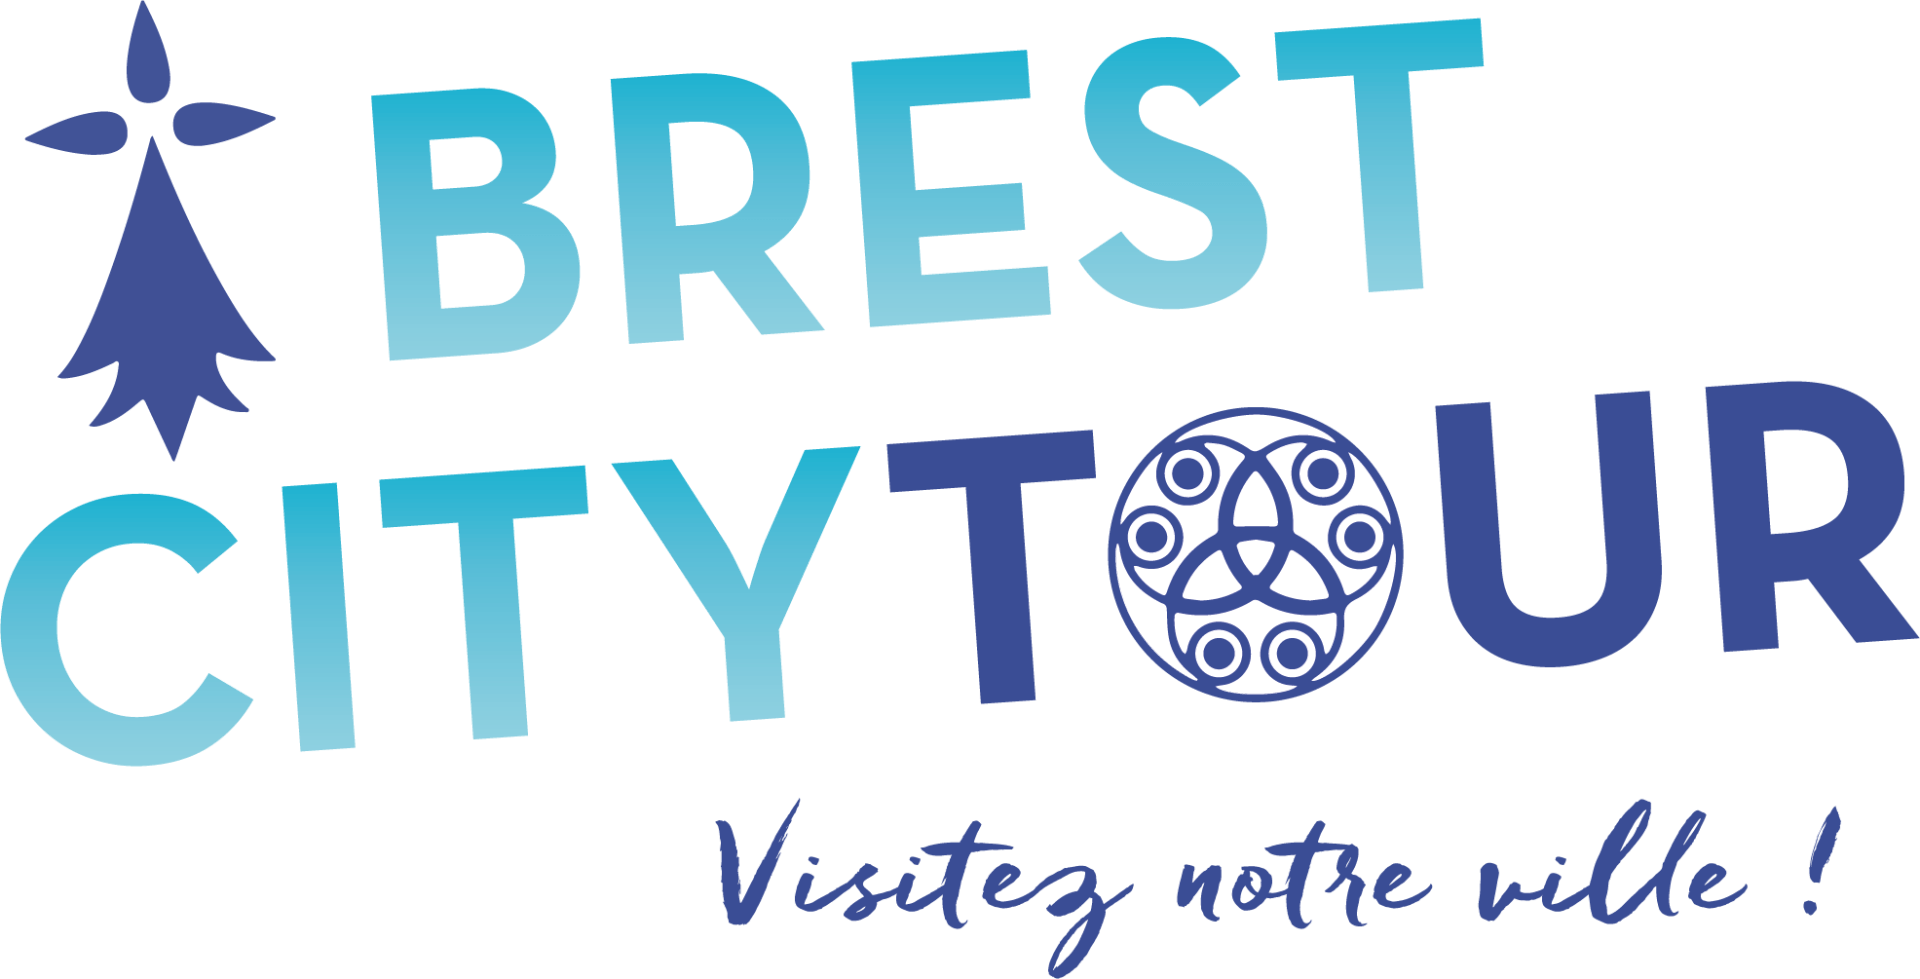 Brest Plougastel idée cadeau vacances Bretagne